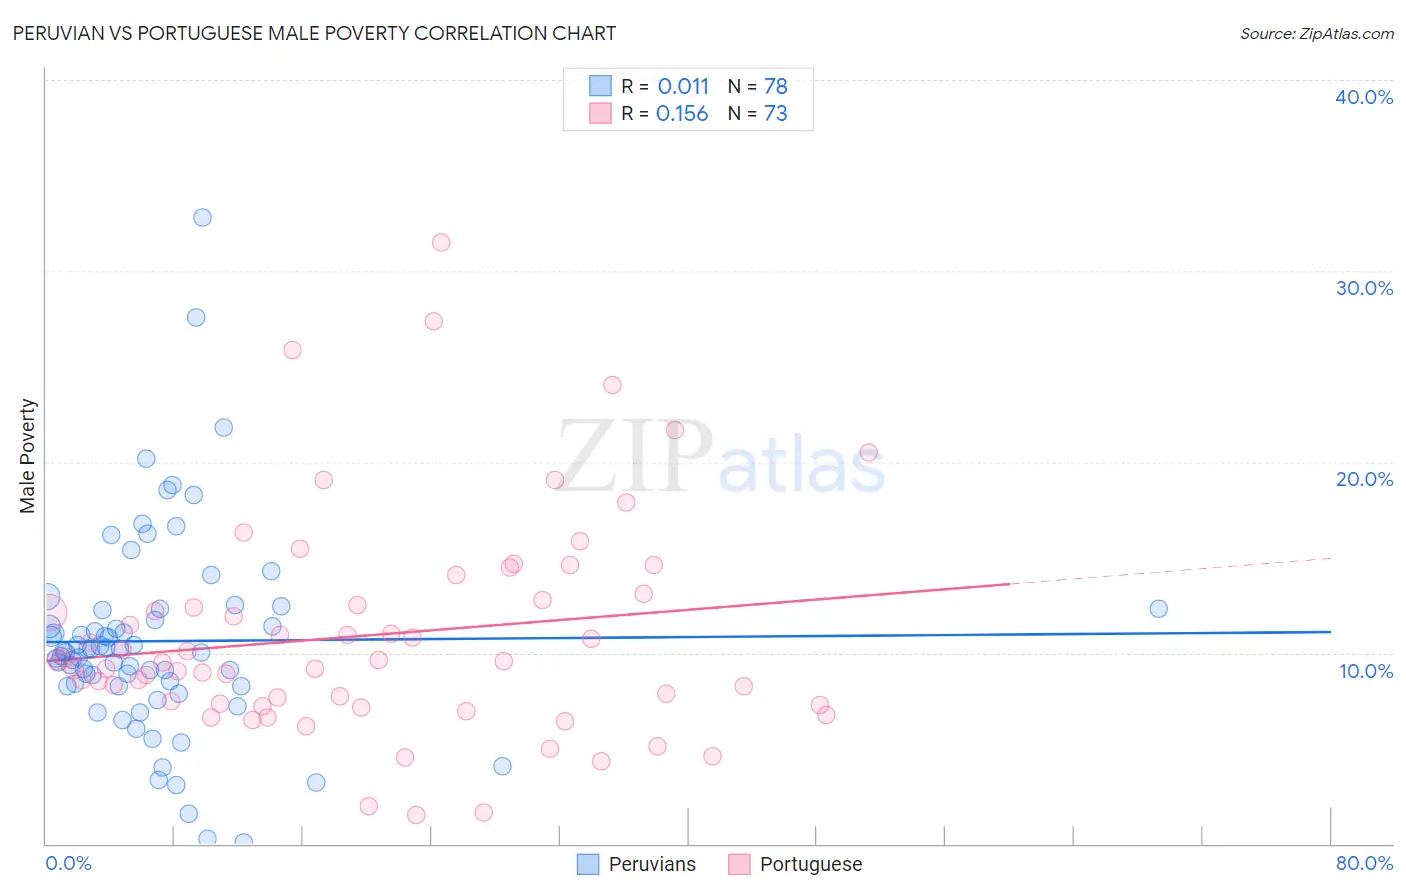 Peruvian vs Portuguese Male Poverty